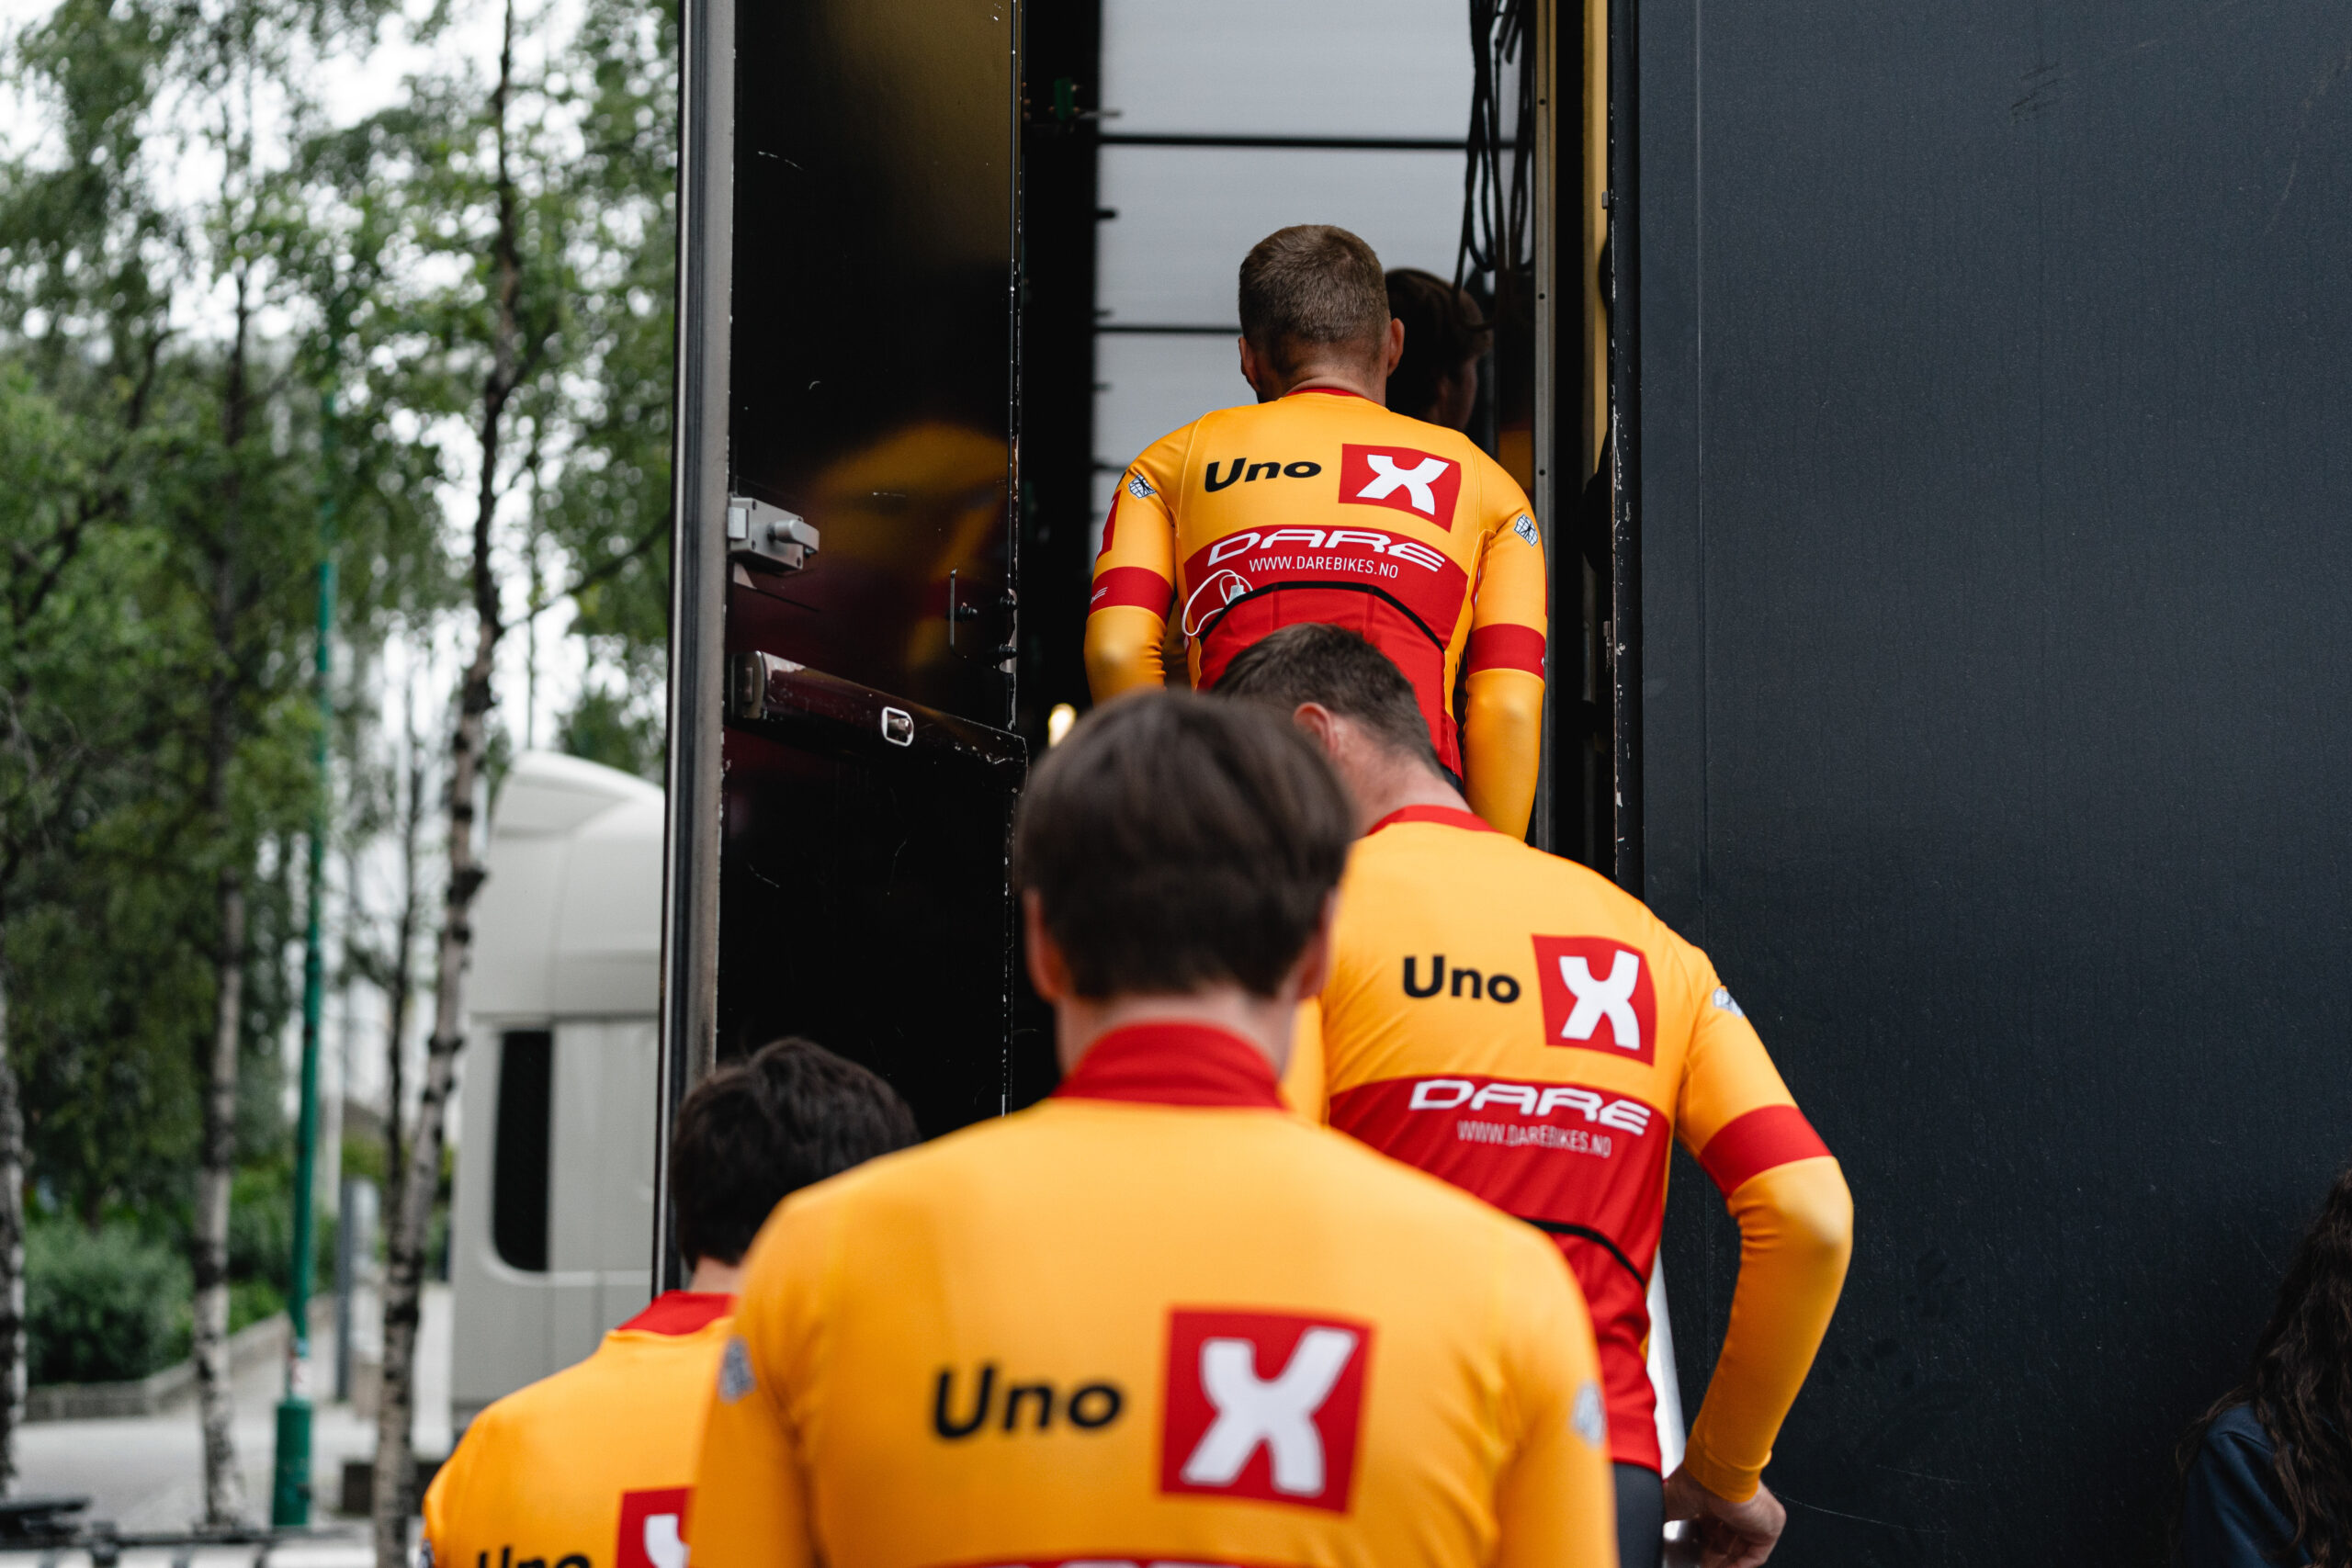 L'équipe UNO-X pourrait franchir un nouveau cap en 2023 en participant au Tour de France / © ASO - Thomas Maheux